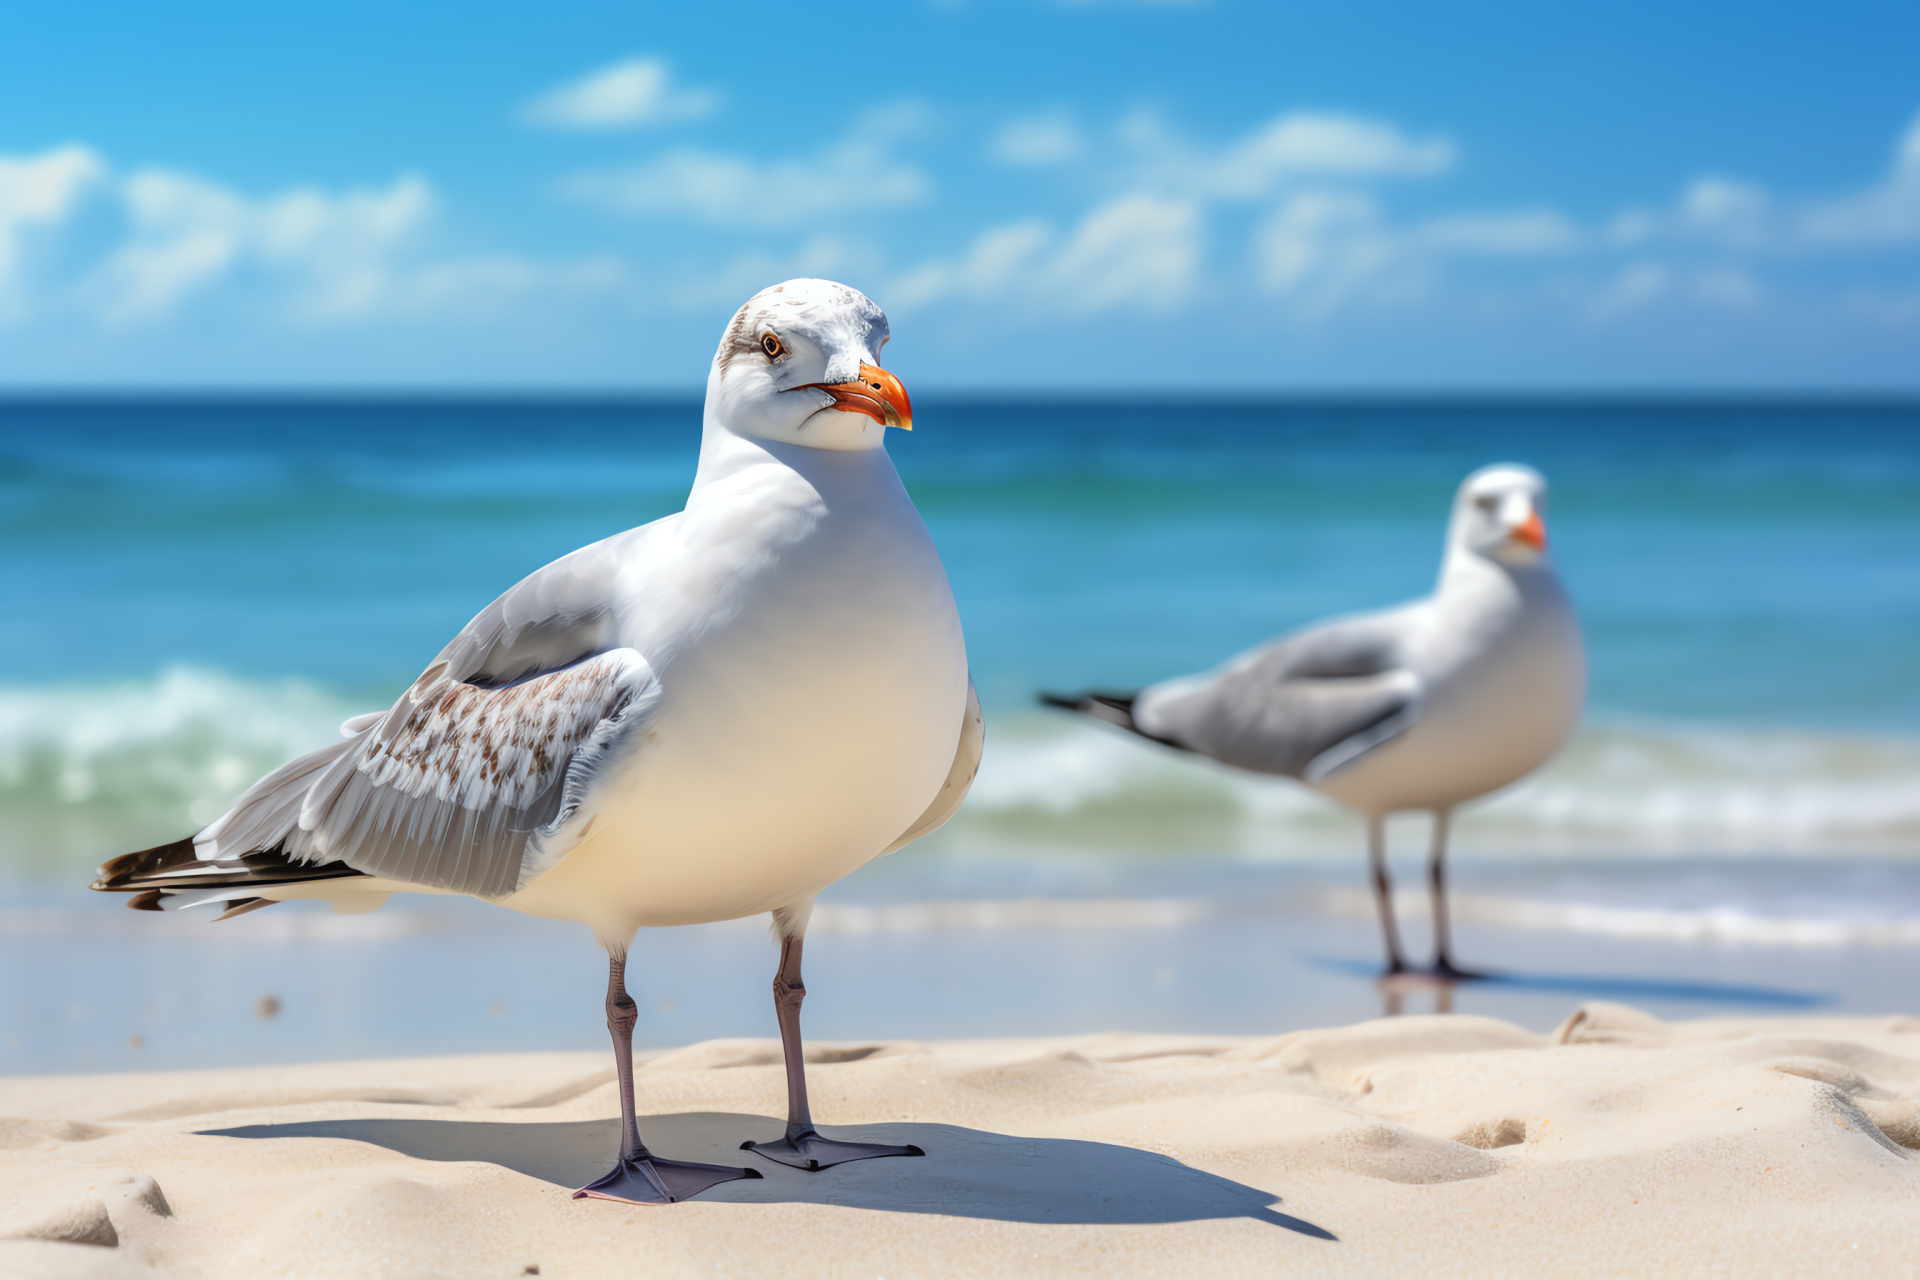 Seagull coastal demeanor, seashore bird, avian gentleness, twin-hued seascape, seaside tranquility, HD Desktop Wallpaper